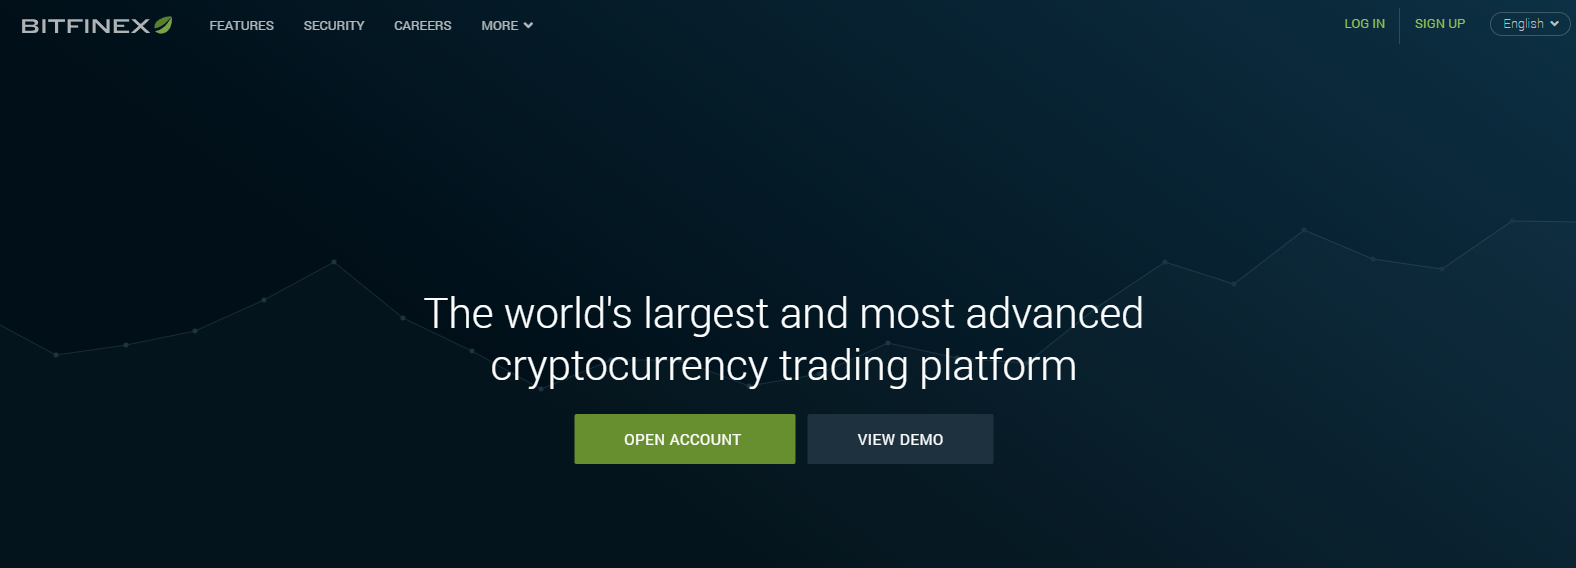 Homepage Bitfinex.com